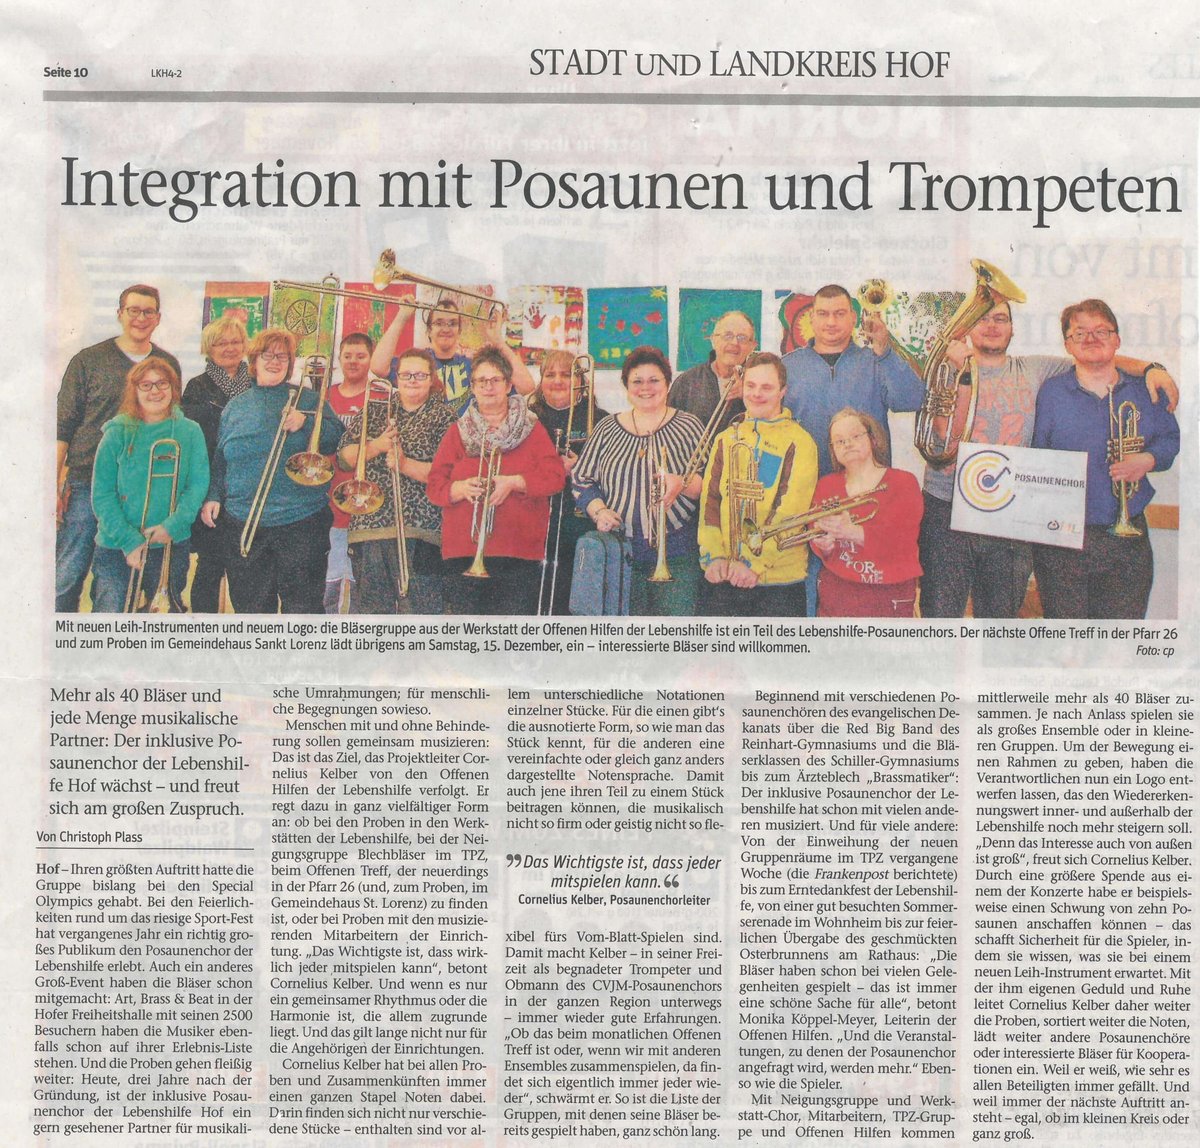 Zu Sehen ist der Zeitungsartikel "Integration mit Posaunen und Trompeten"